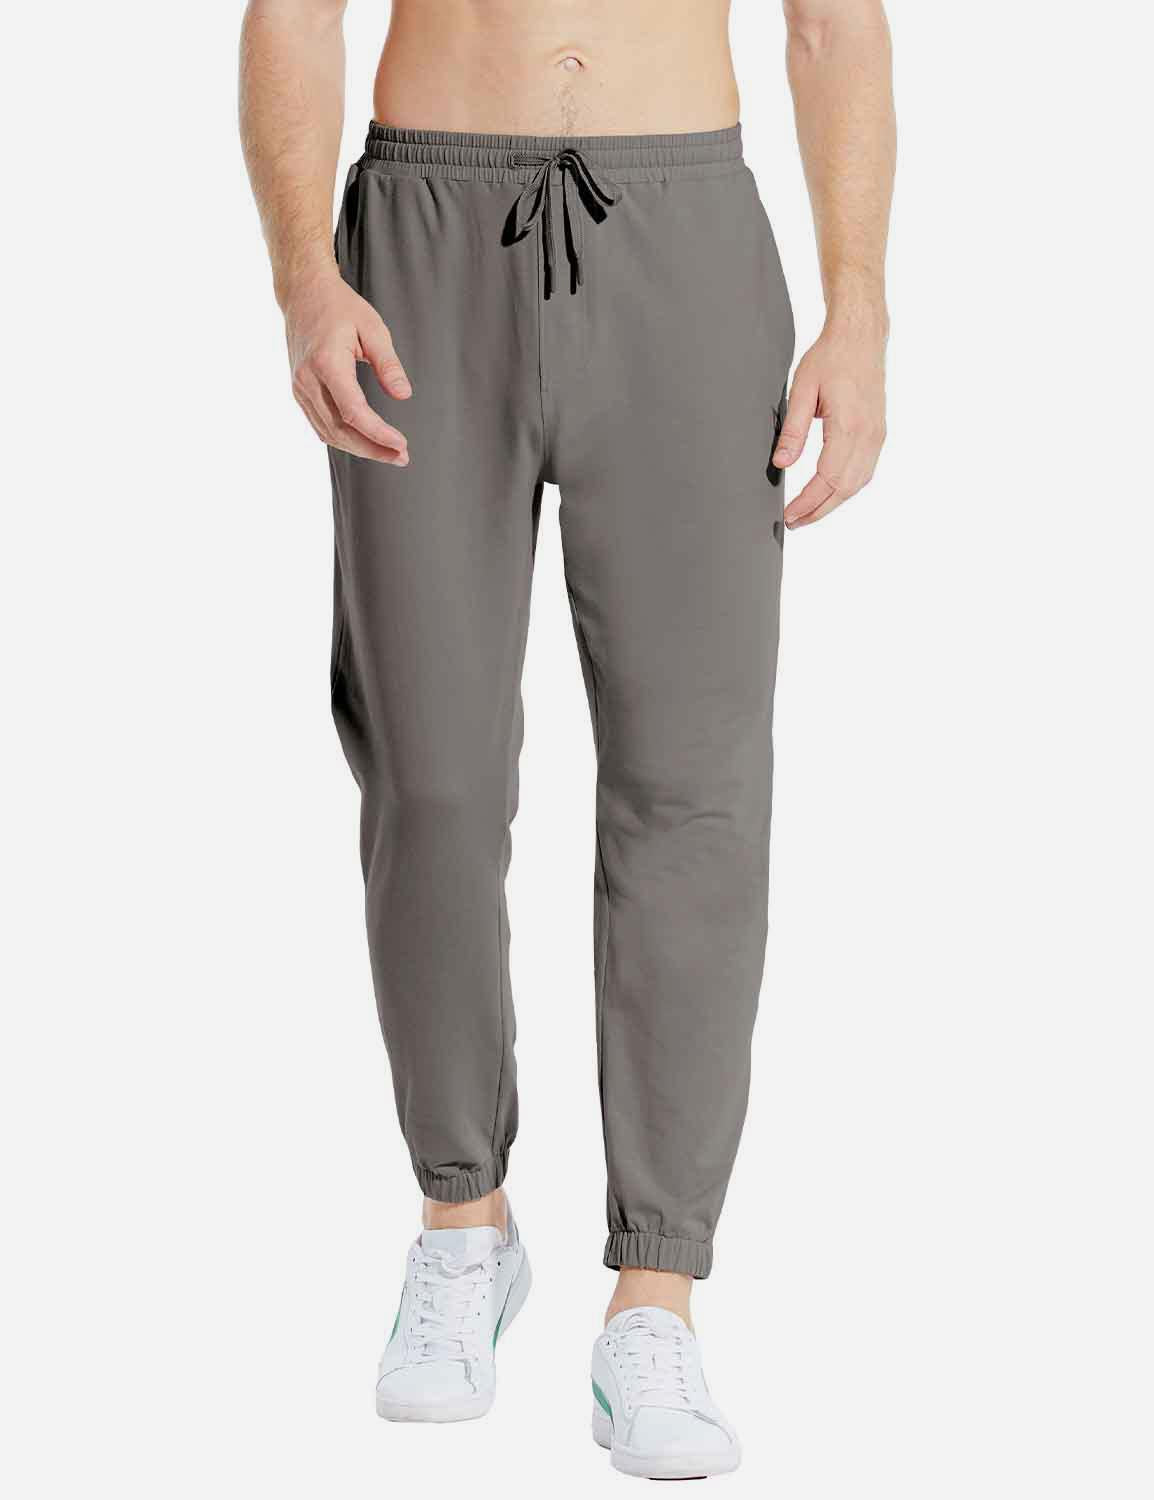 Baleaf Men's Basic Comfy Loose Fit Pocketed Sweatpants